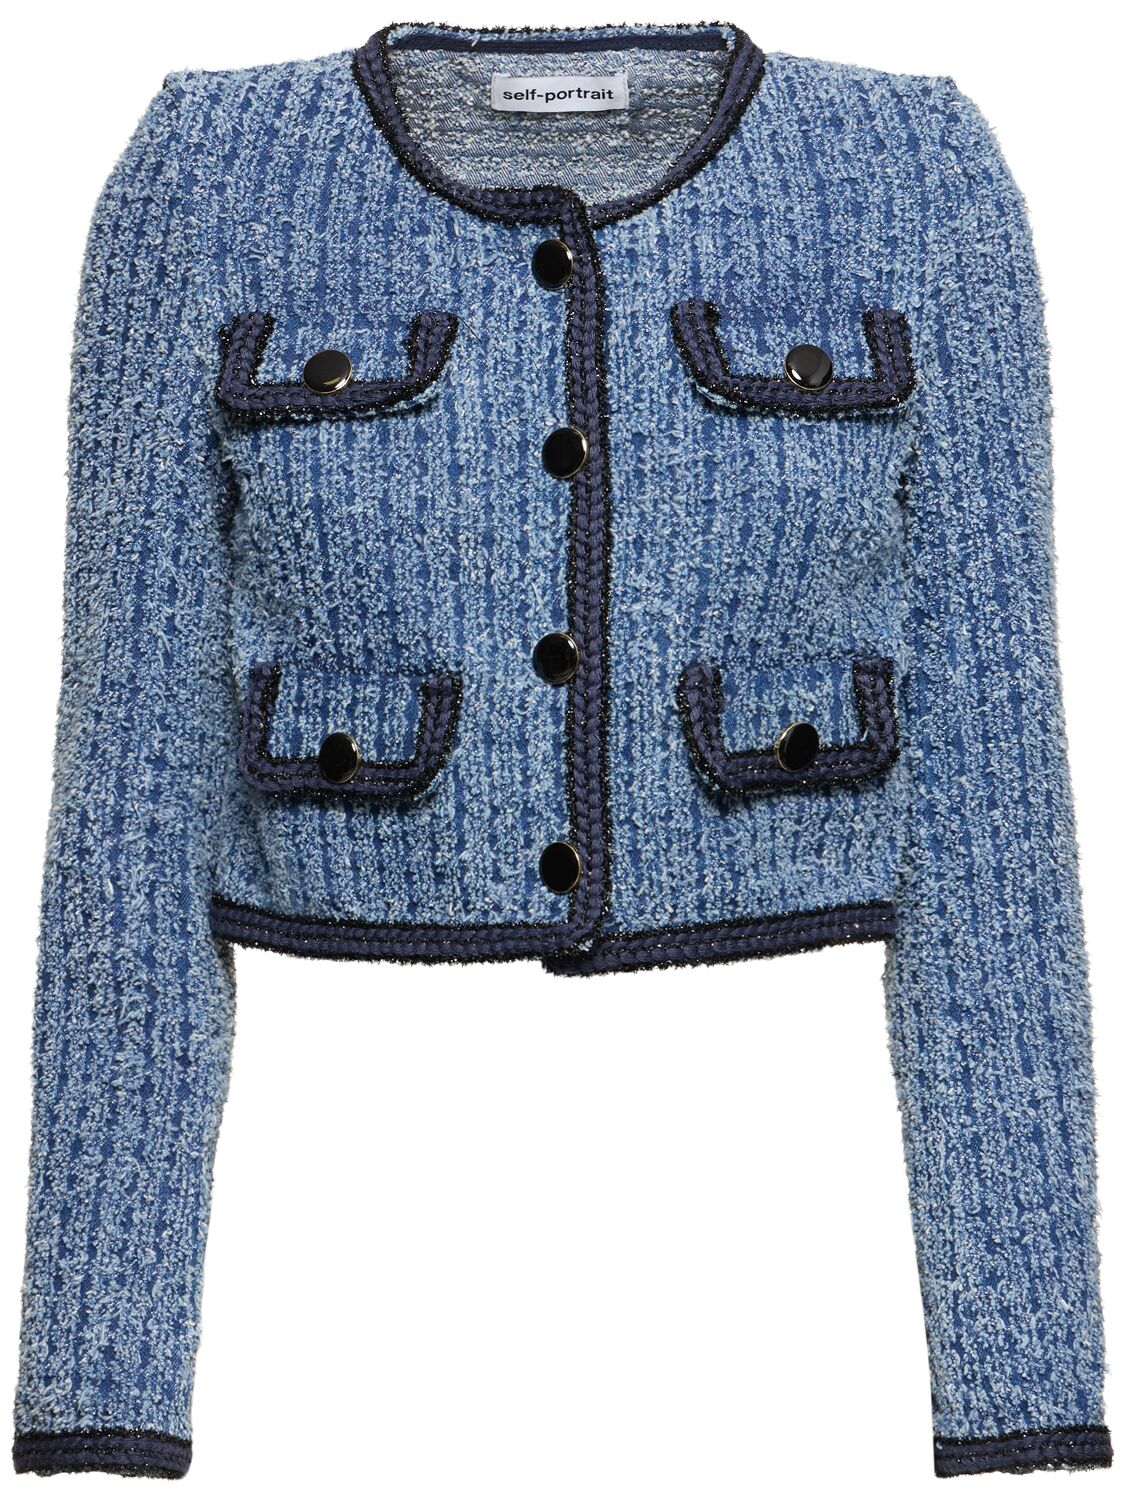 Self-portrait Textured Cotton Denim Jacket In Blue